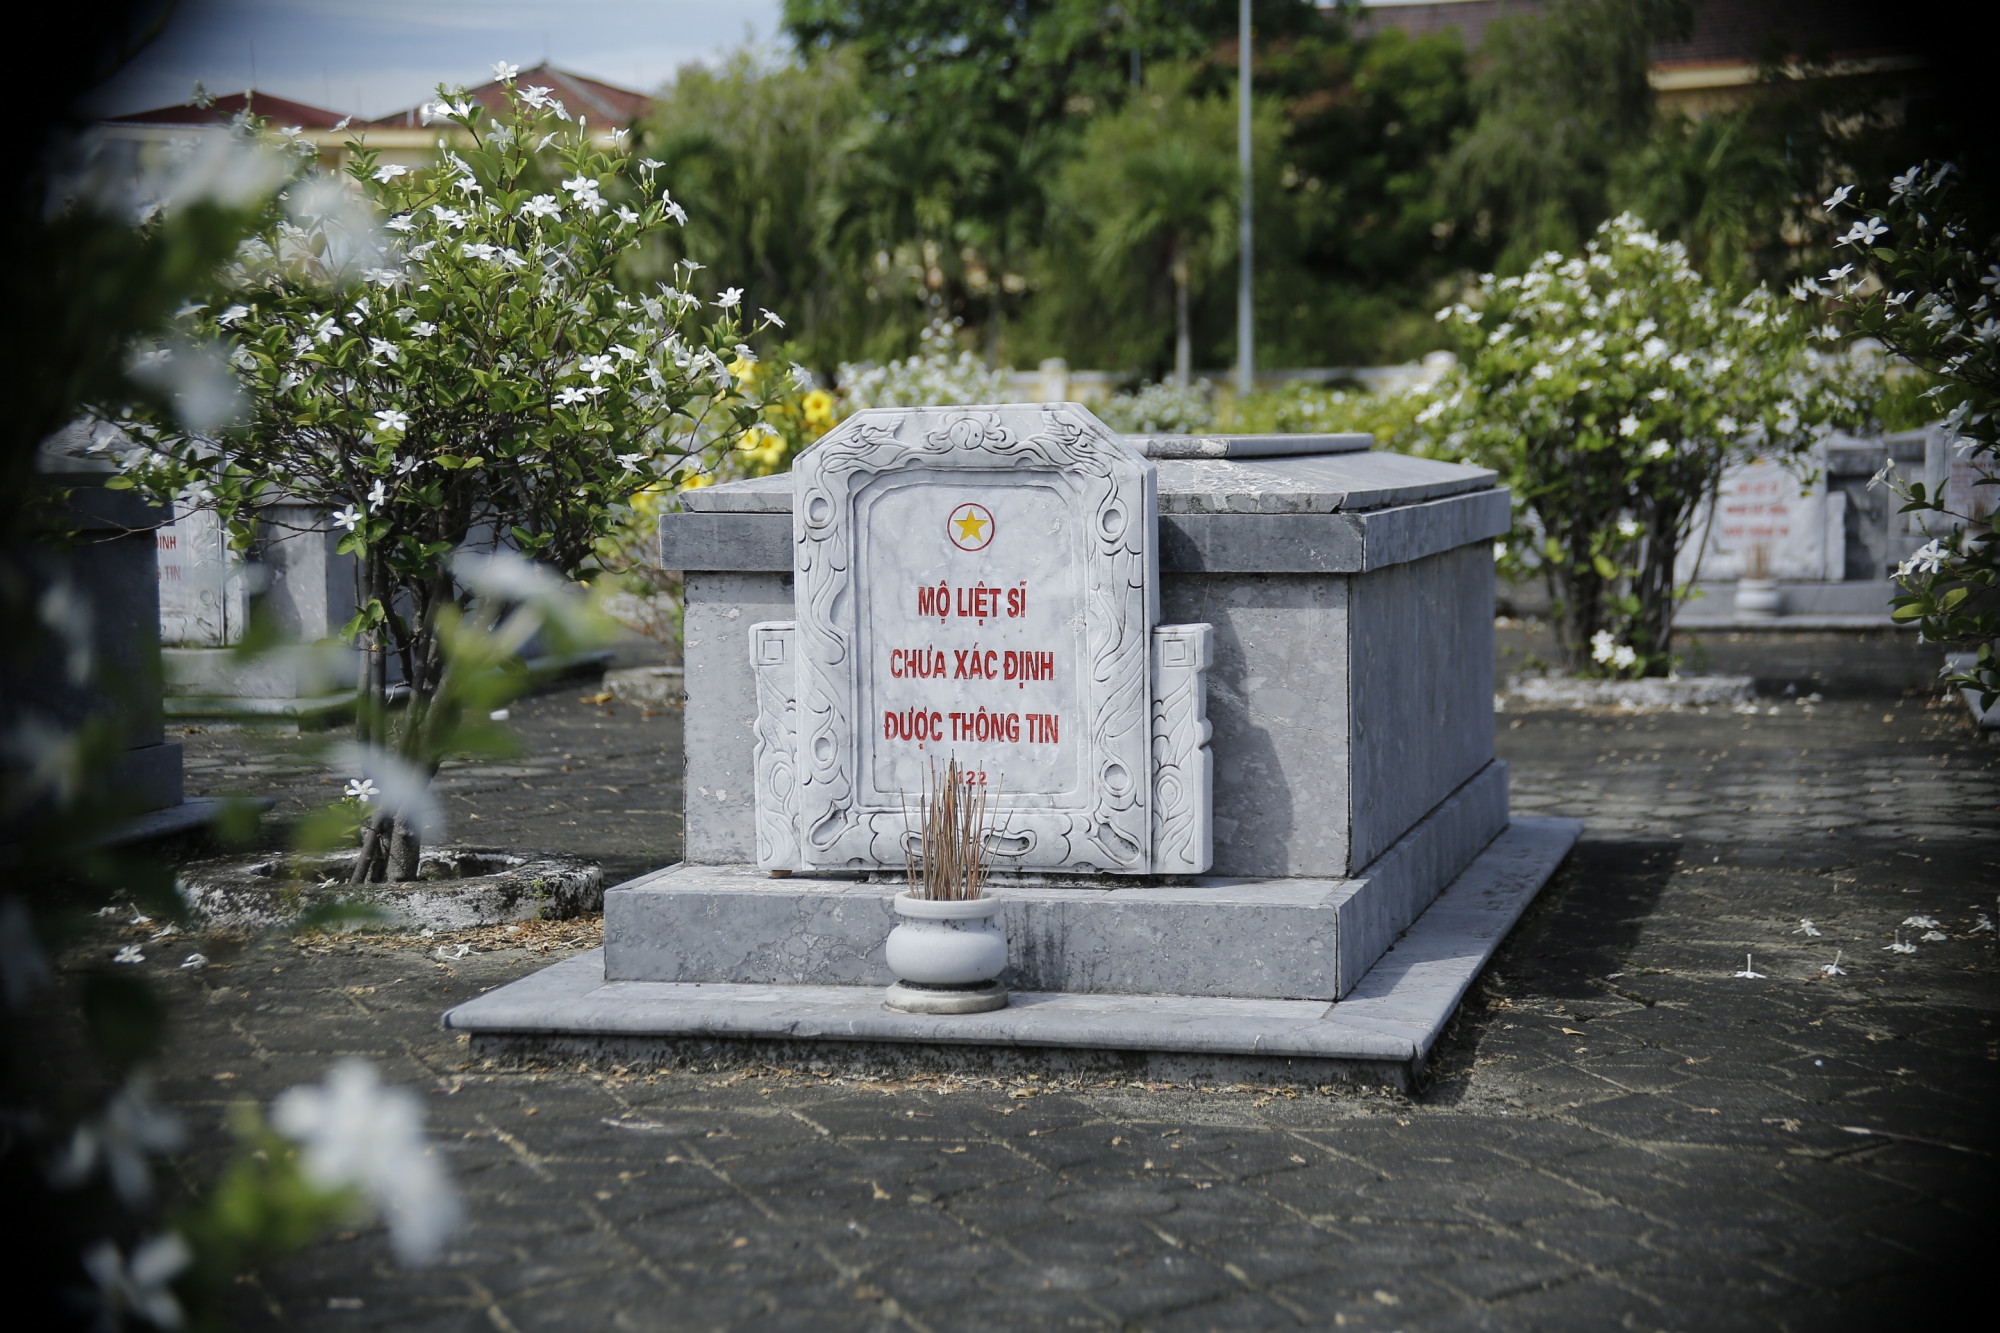 Việc thay đổi bia mộ từ Liệt sĩ vô danh thành liệt sĩ chưa xác định được thông tin” đã được chính quyền tỉnh Quảng Nam triển khai từ năm 2016. Đến nay, đã có hơn 20 nghìn bia mộ được thay đổi